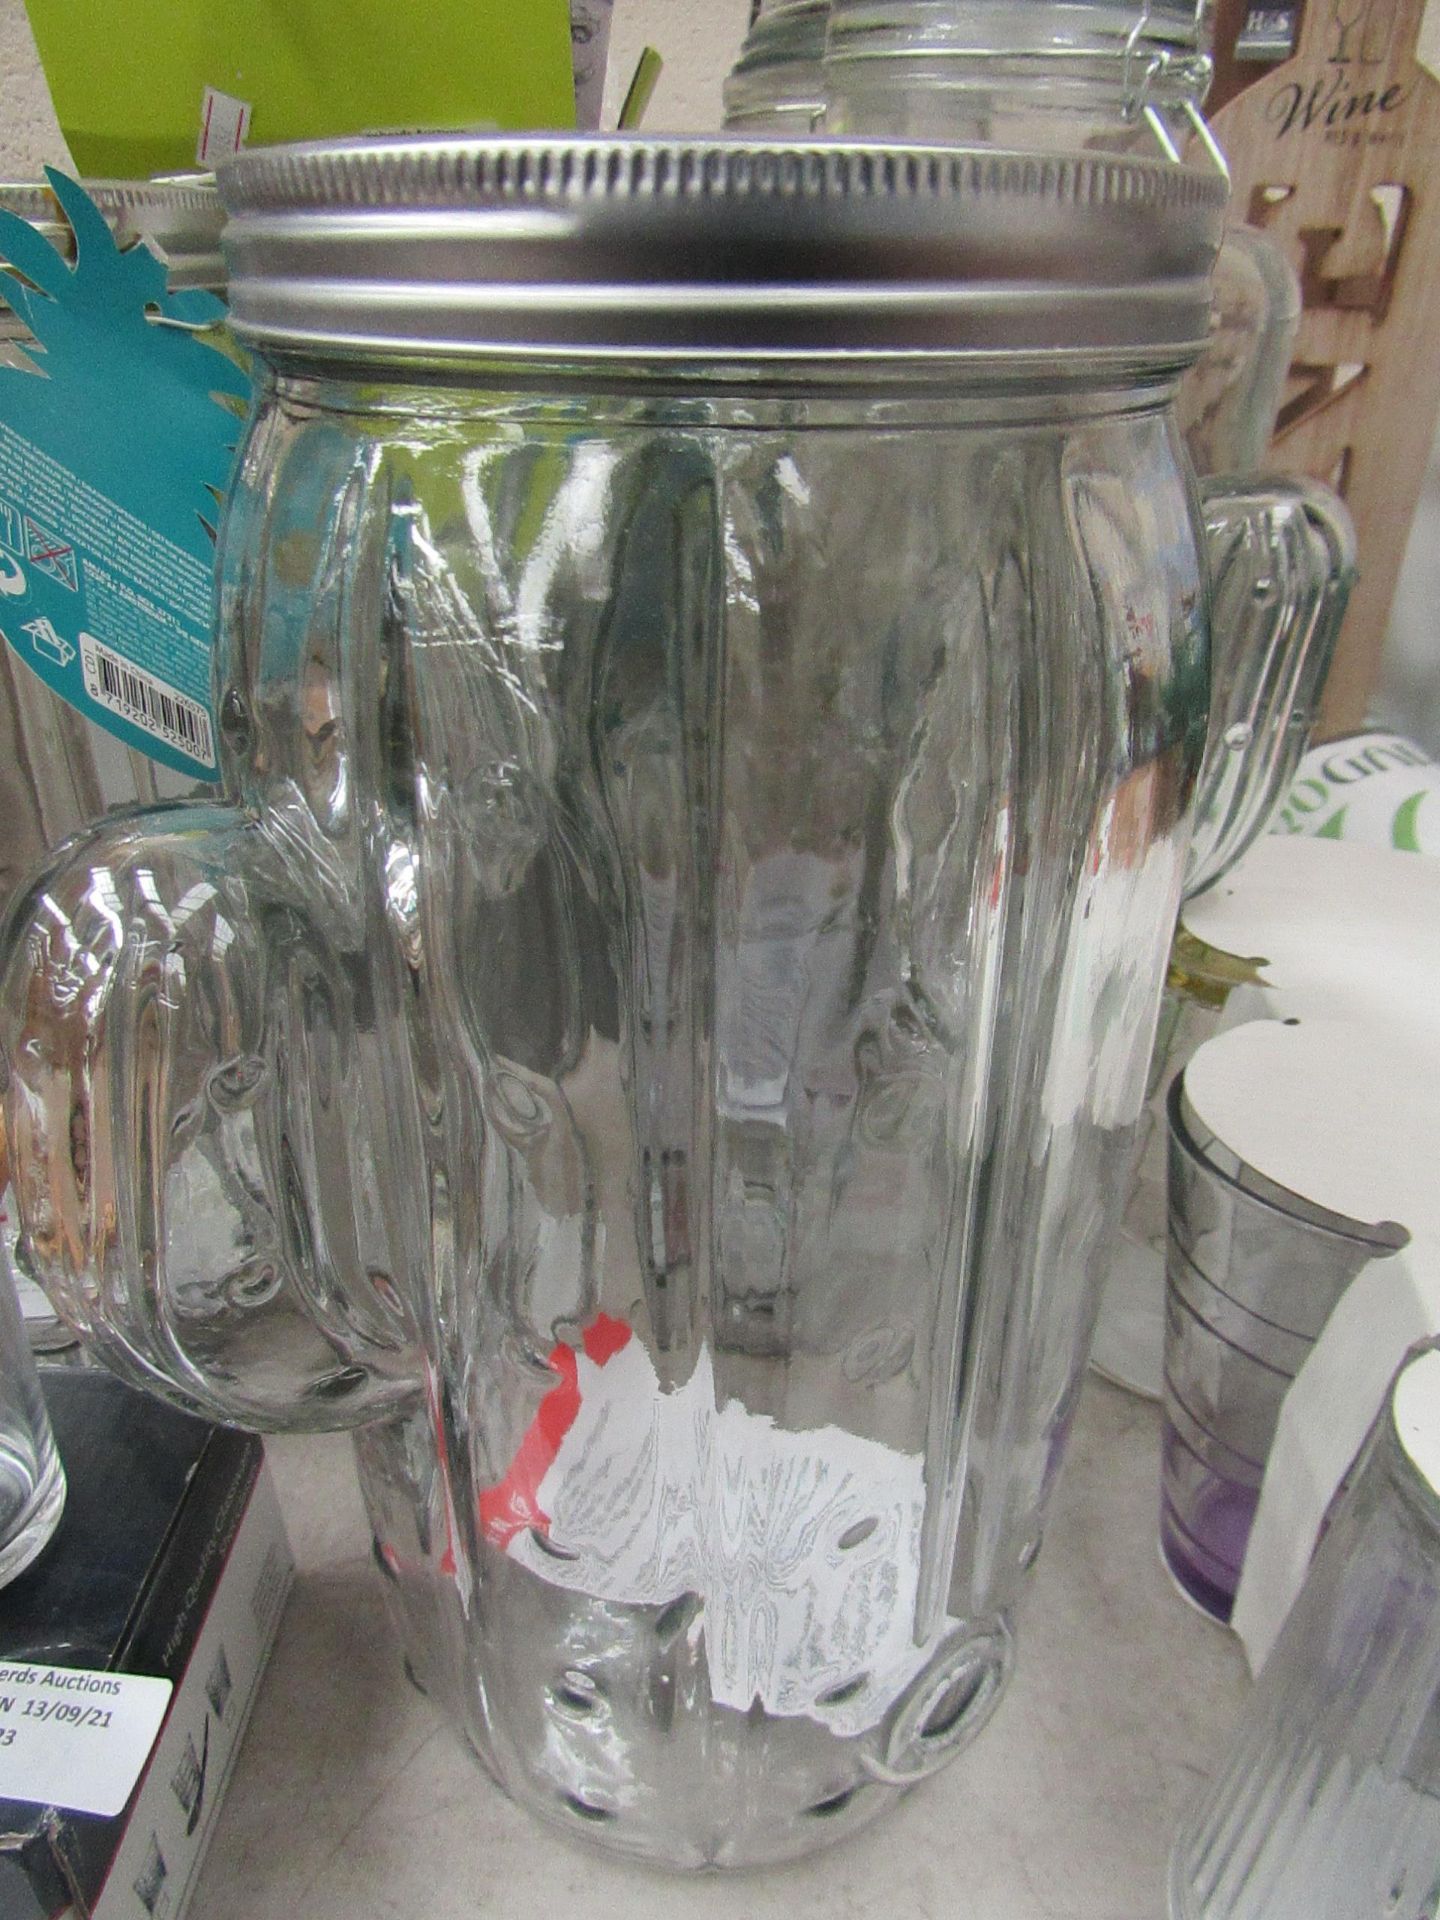 Cactus shaped Beverage jar missing tap, looks unused